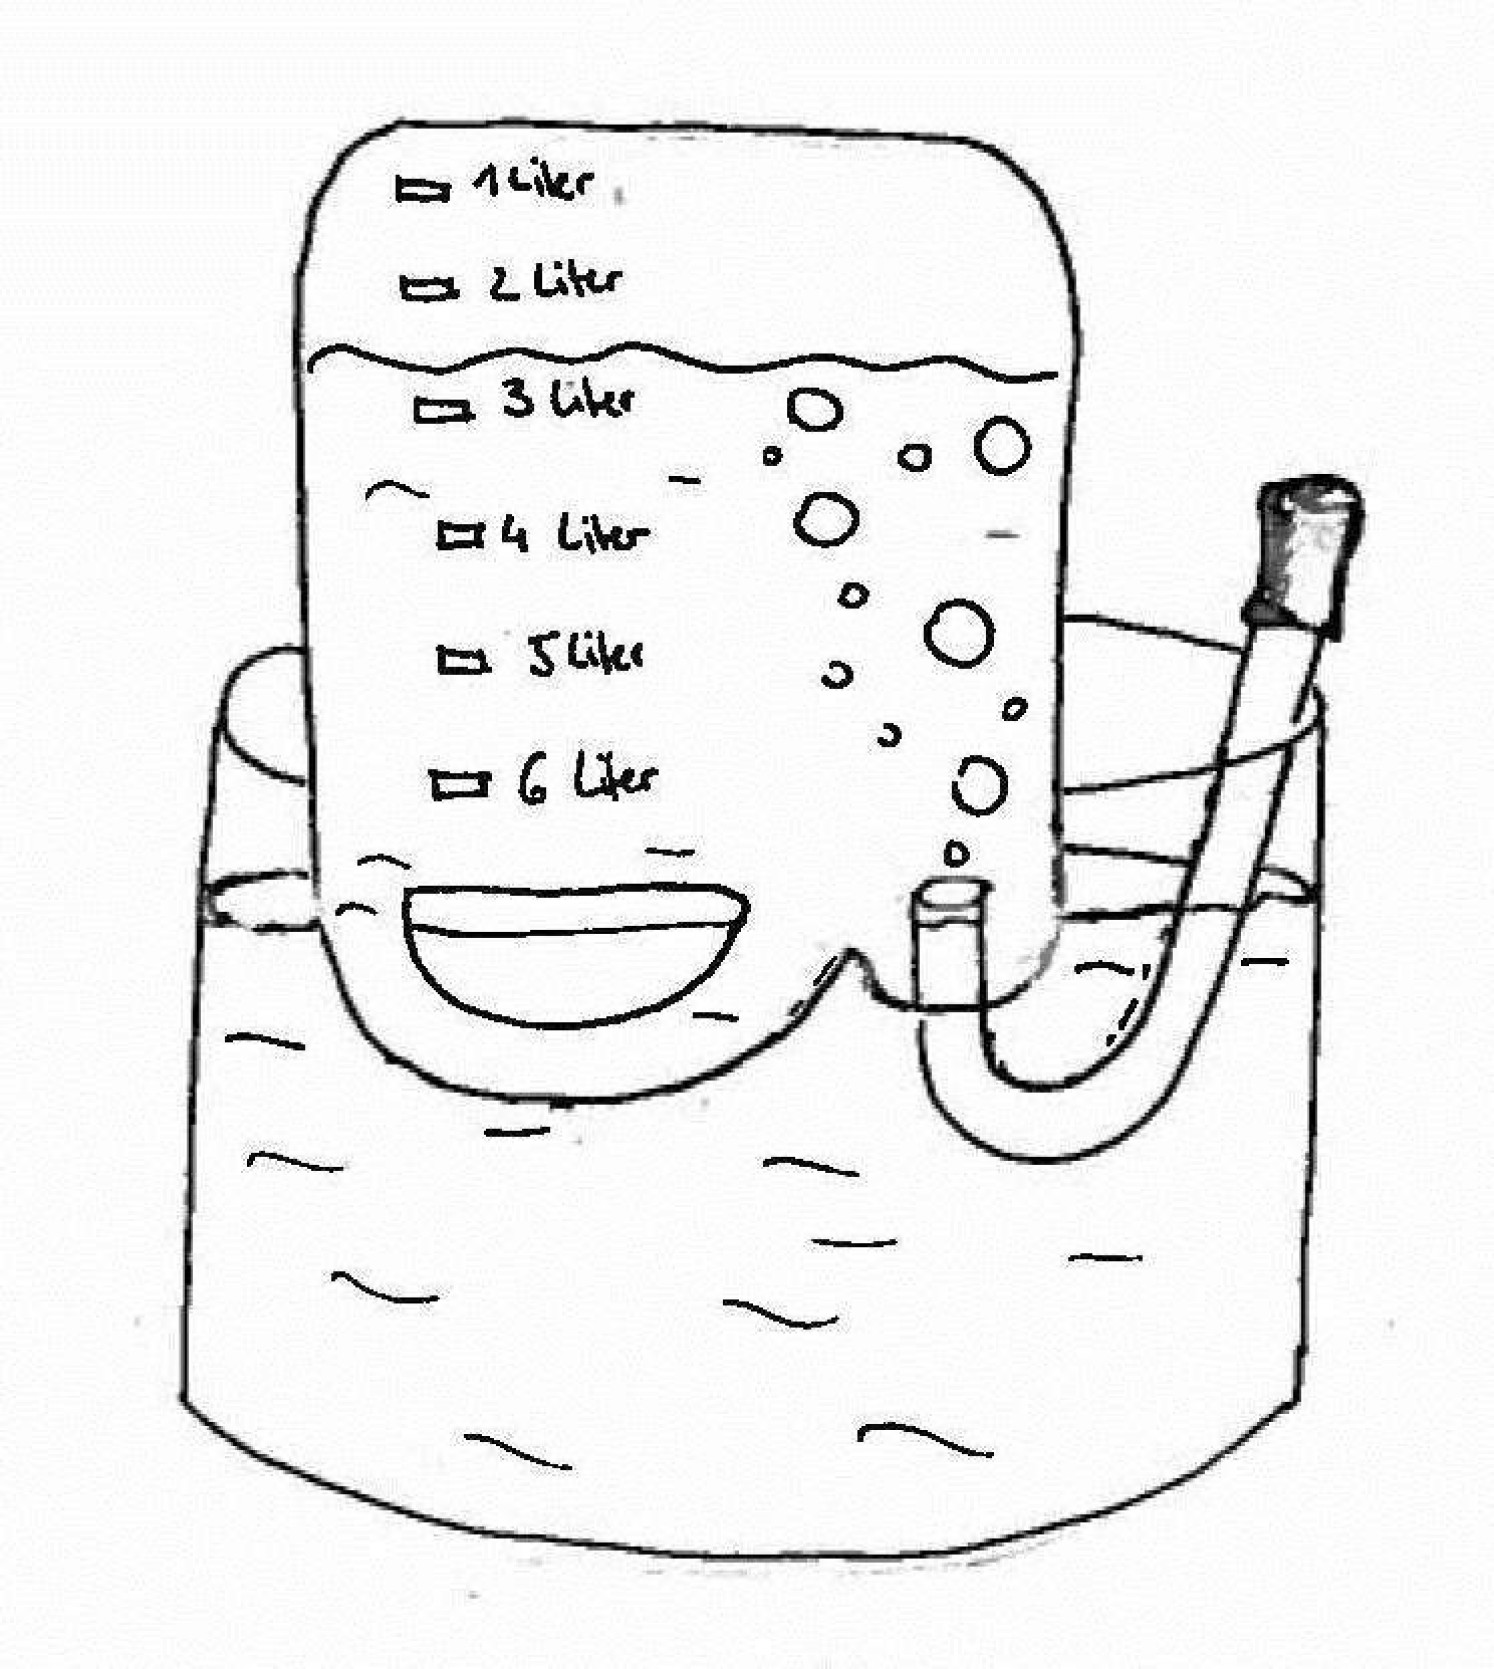 Experiment Lungenkapazität messen mit einem Kanister und einem Wasserkübel.